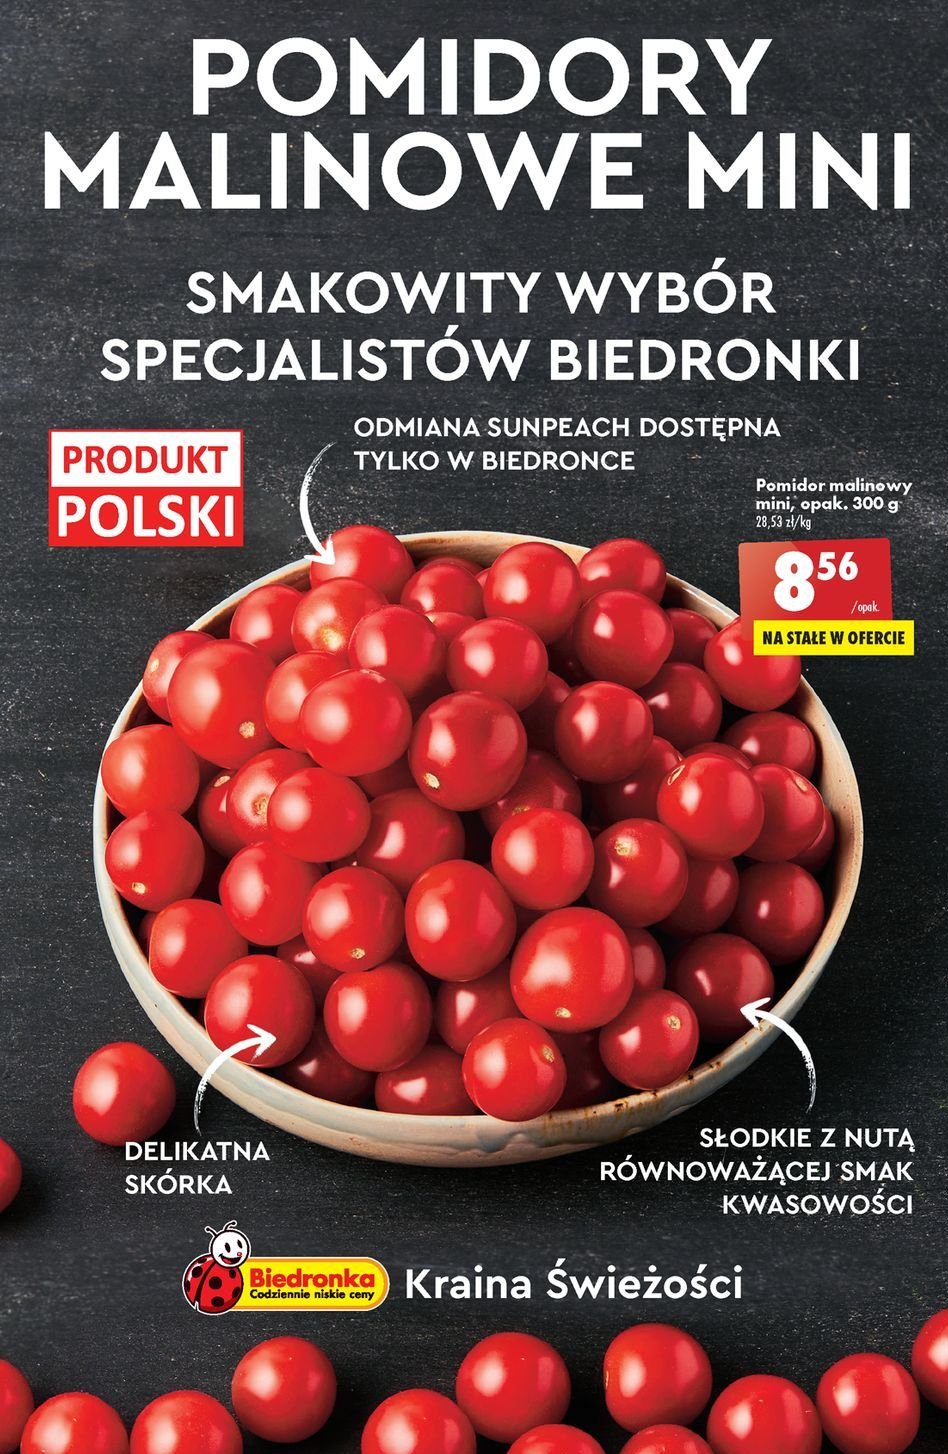 Pomidory cherry malinowe promocje